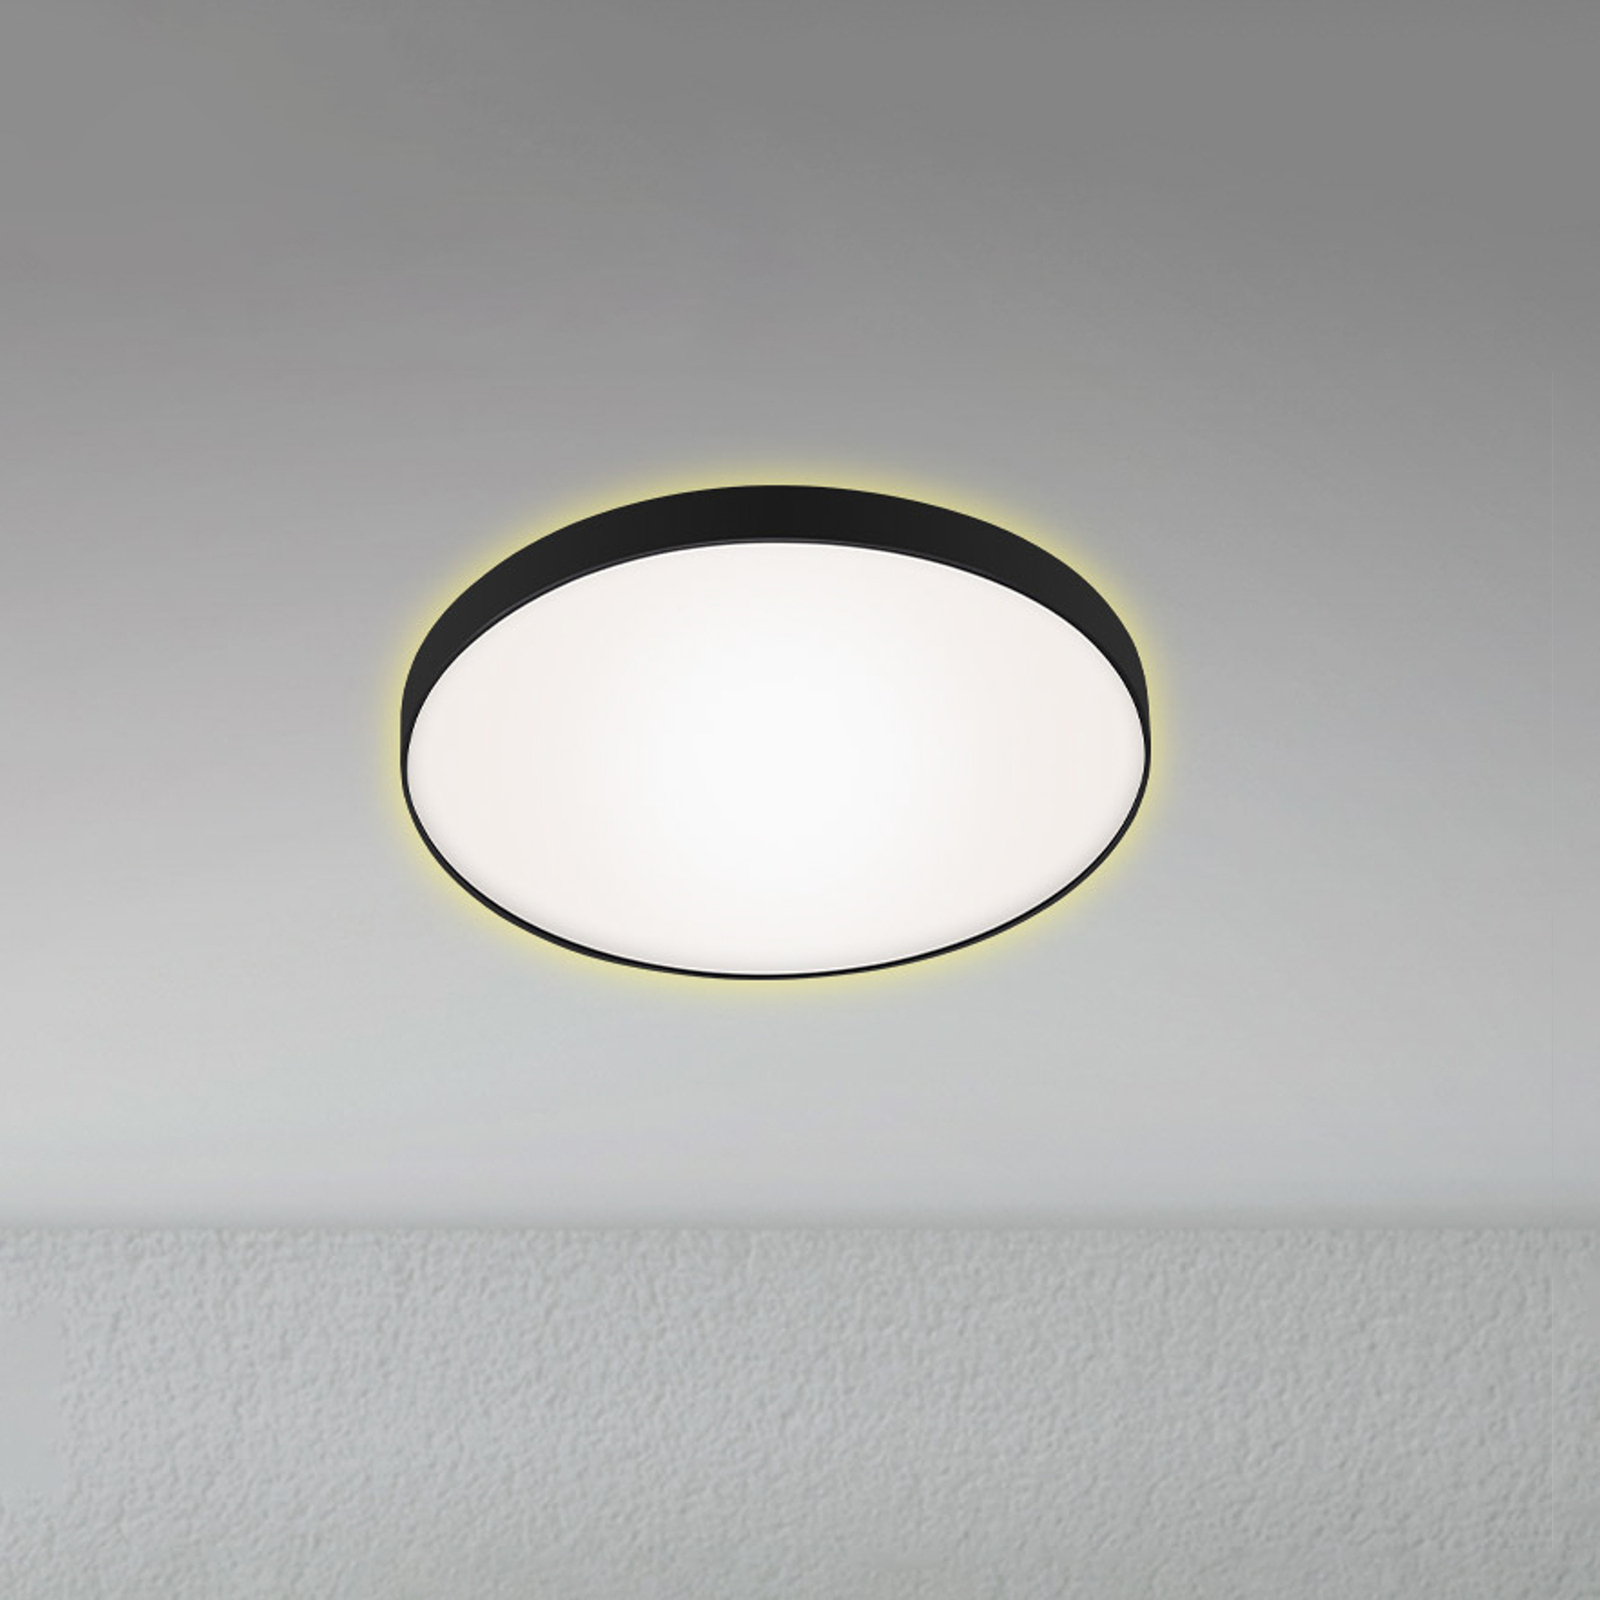 LED plafondlamp Flet met backlight, Ø 28,5 cm